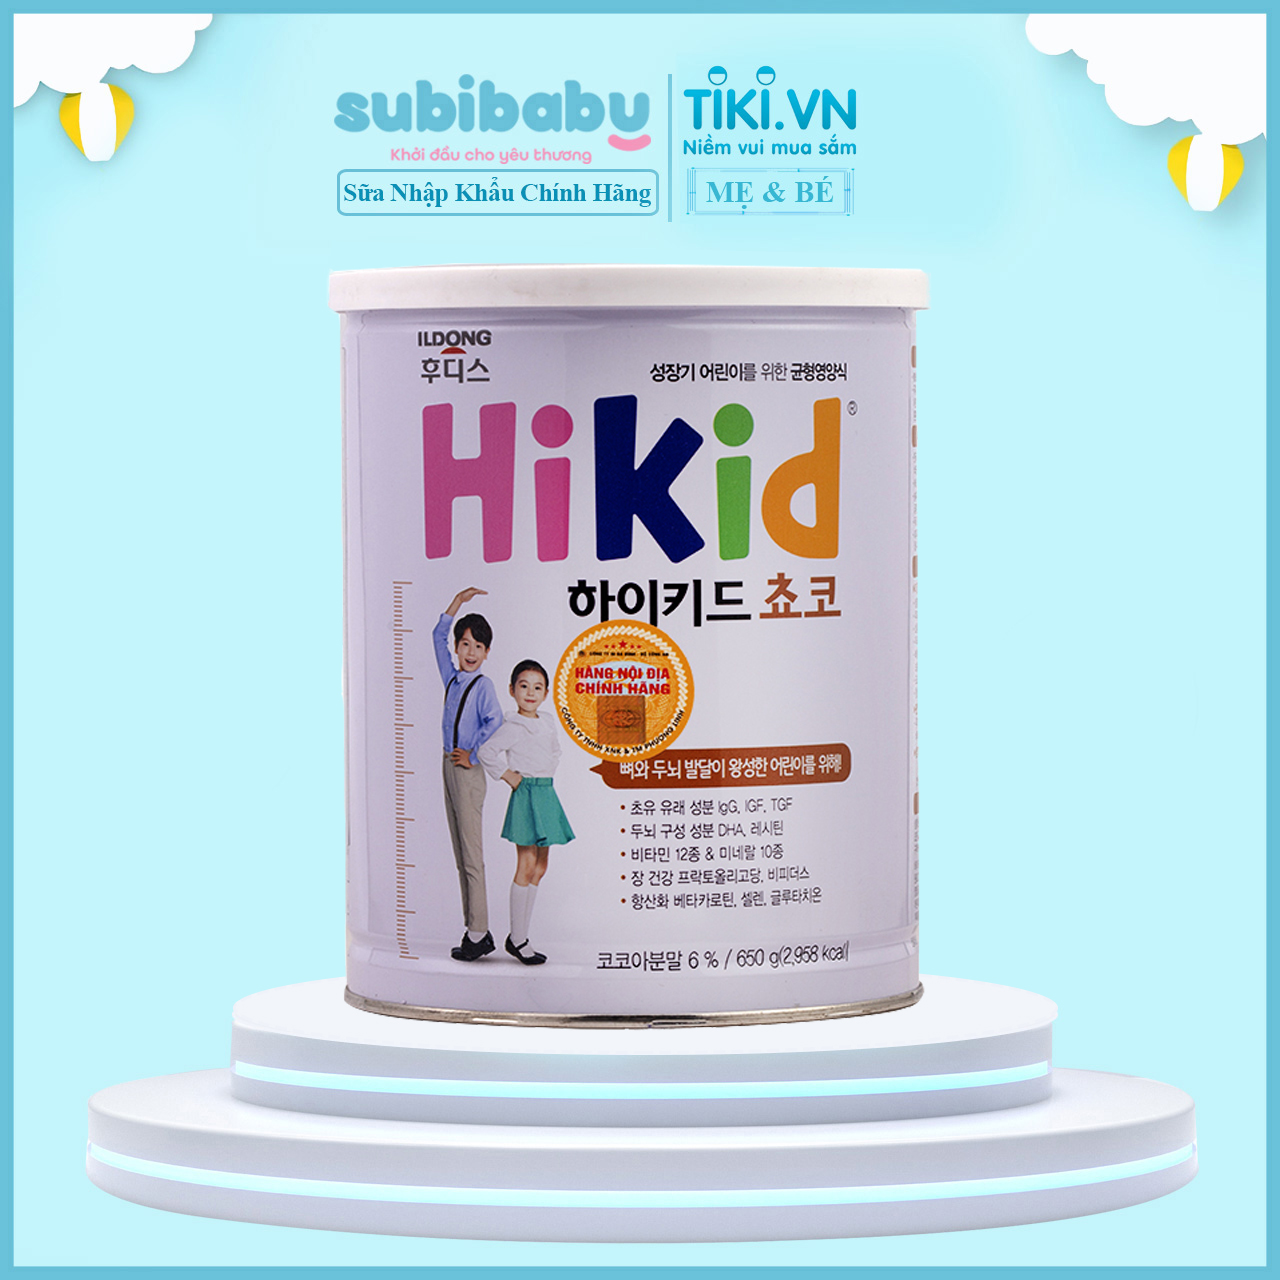 Sữa Hikid vị Socola Hàn Quốc